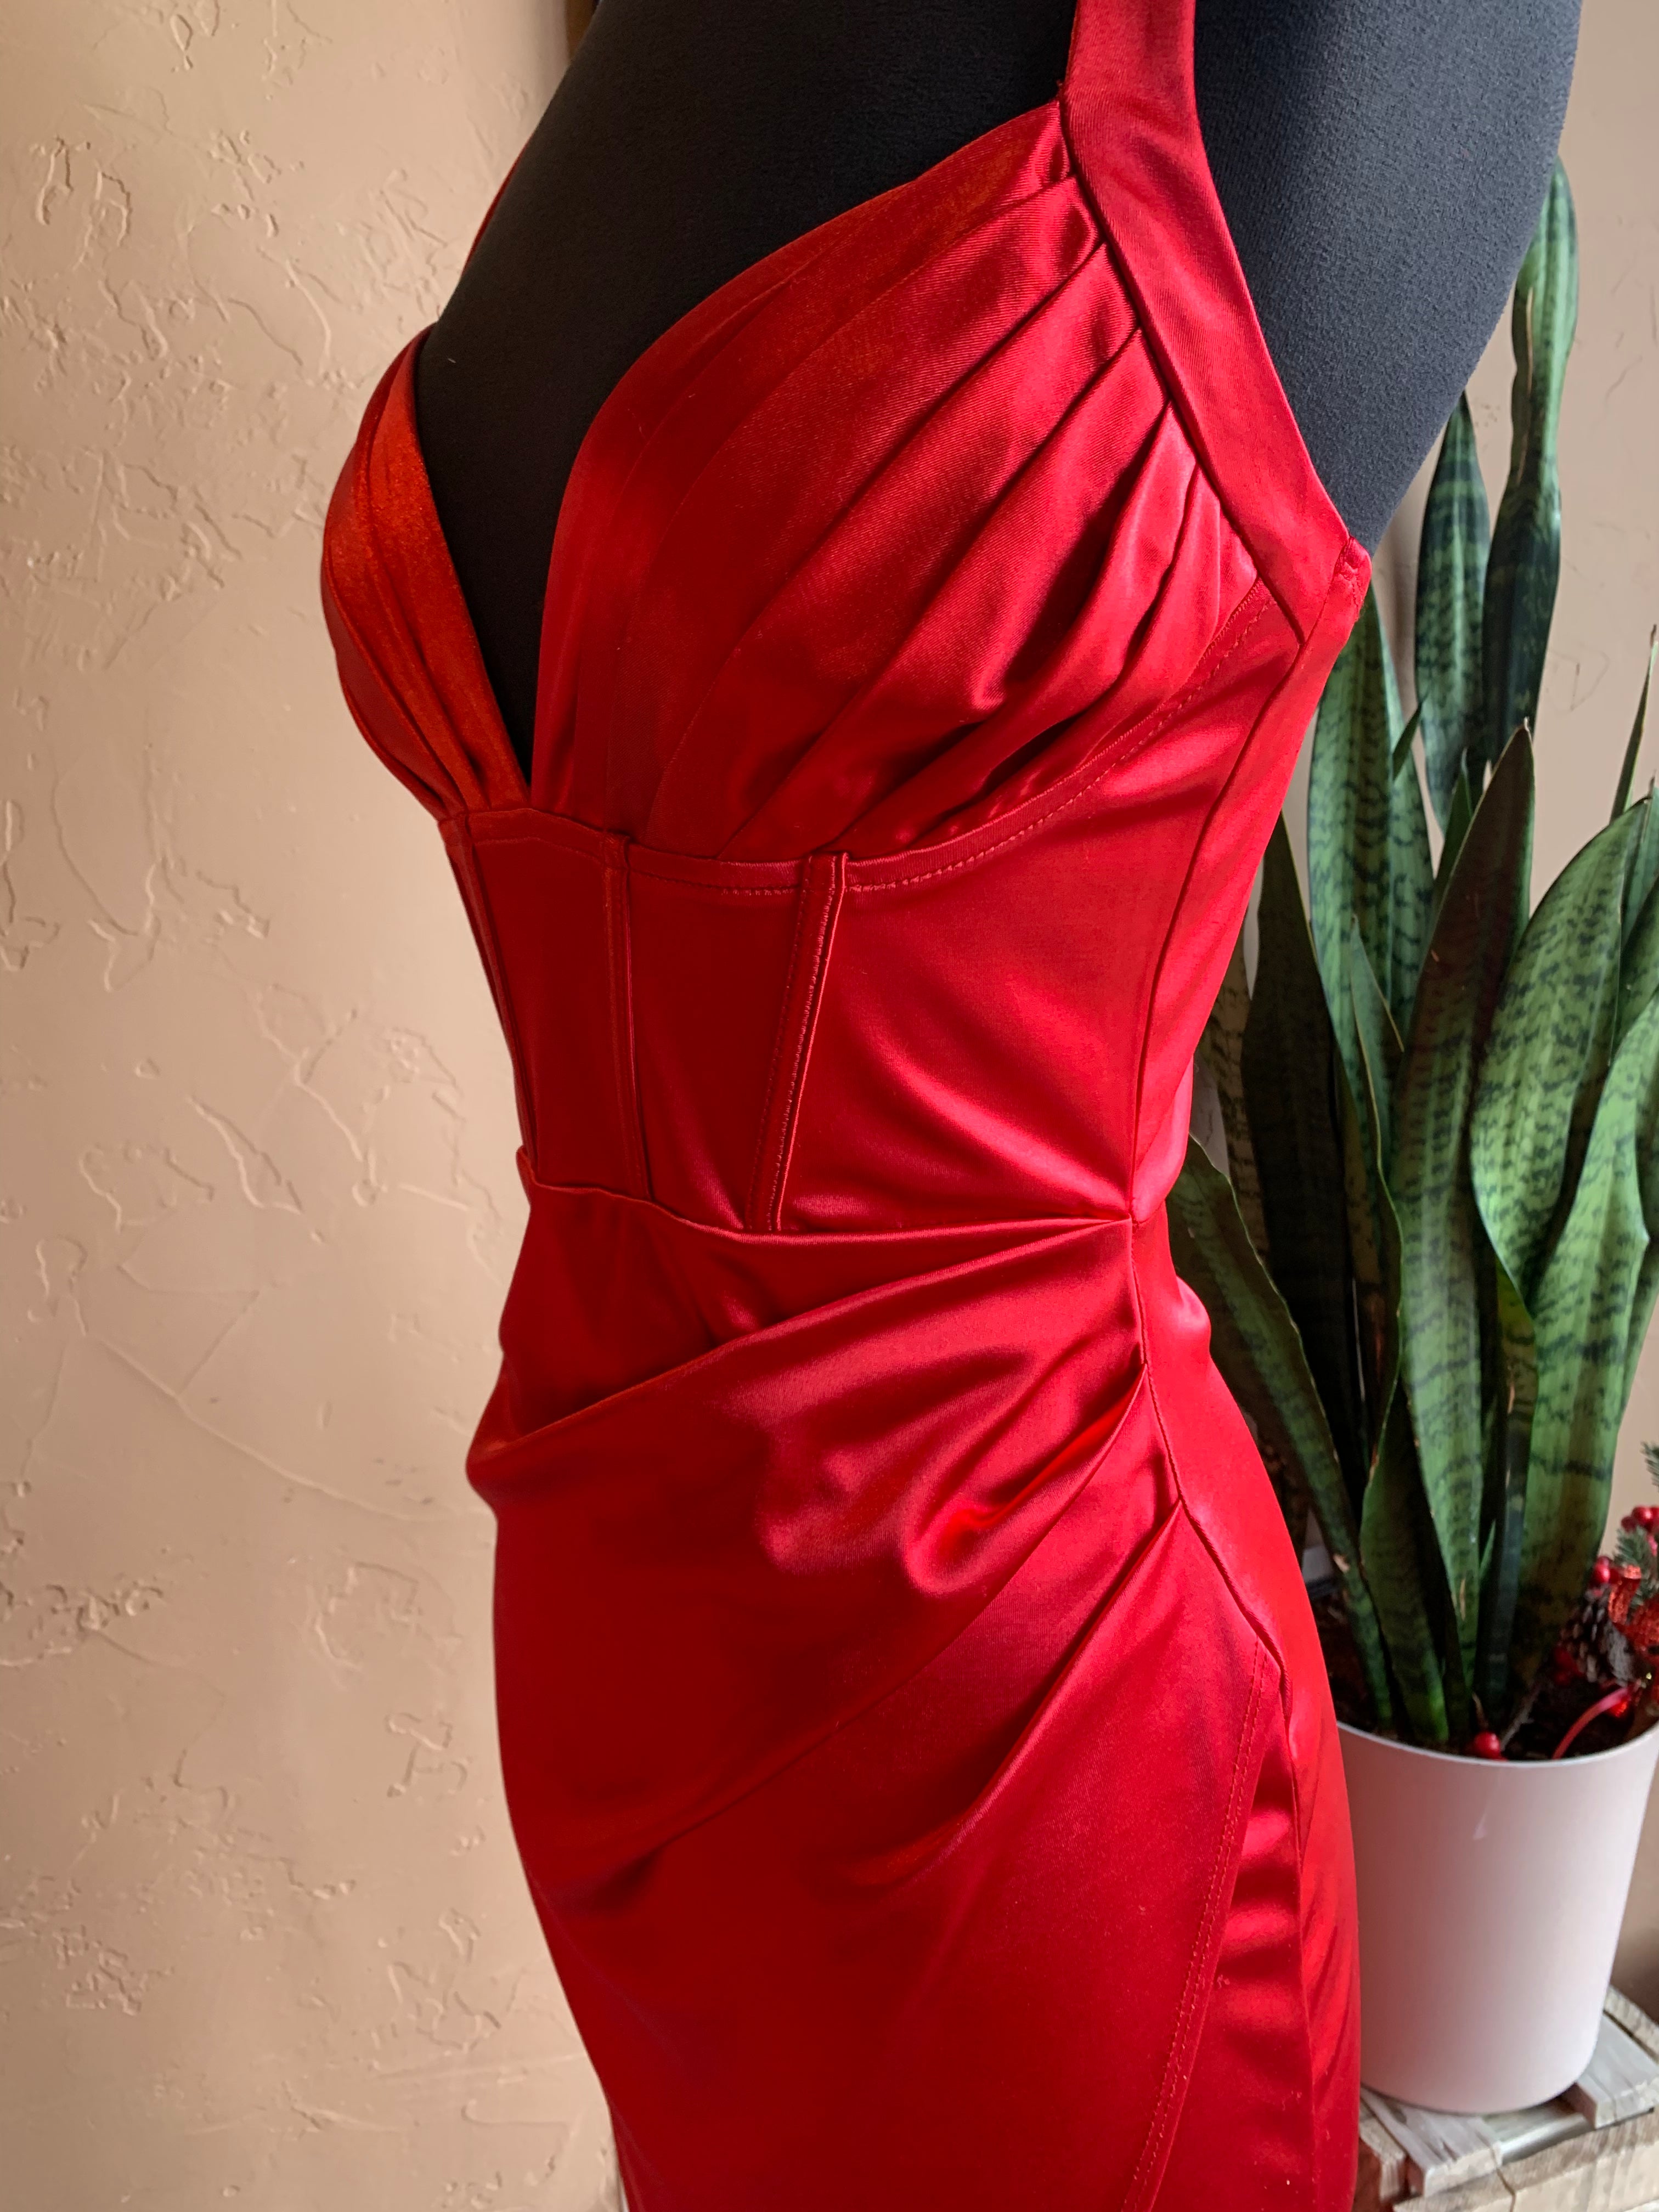 Red Satin Bustier Design Sleeveless Long Evening Dress